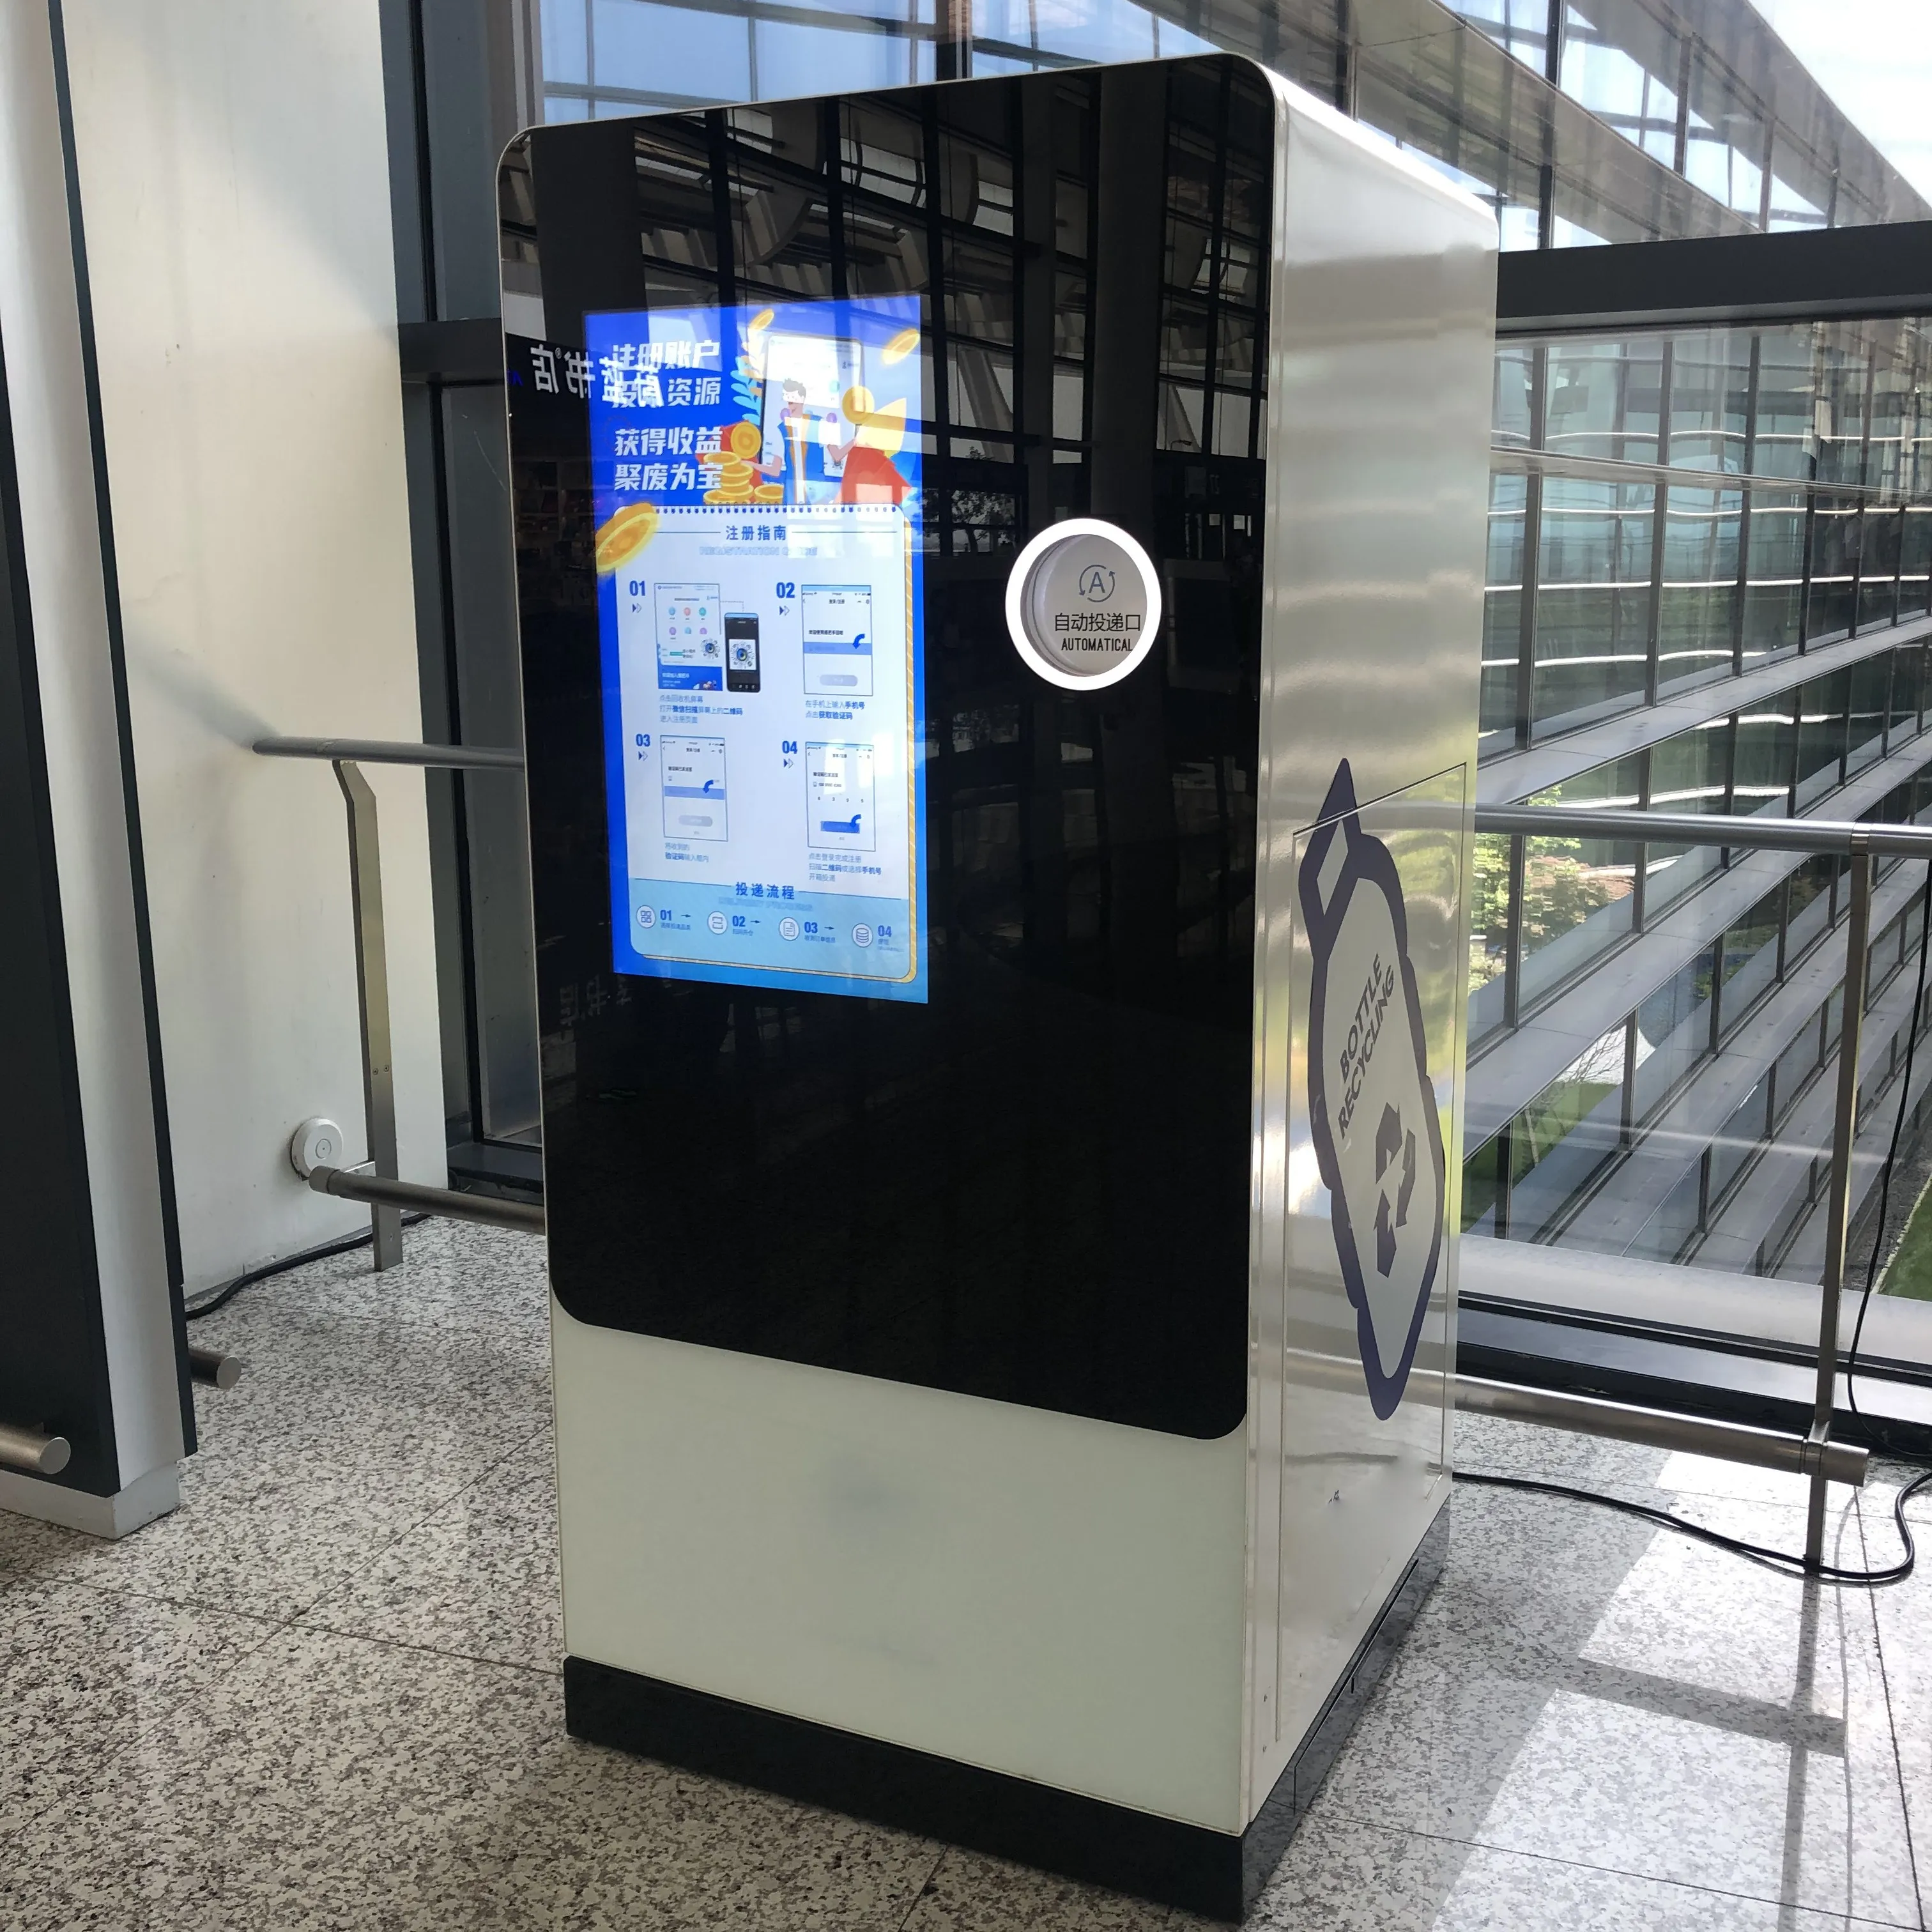 Reverse Vending Machine für Plastik wasser flaschen und Aluminium können recycelt werden